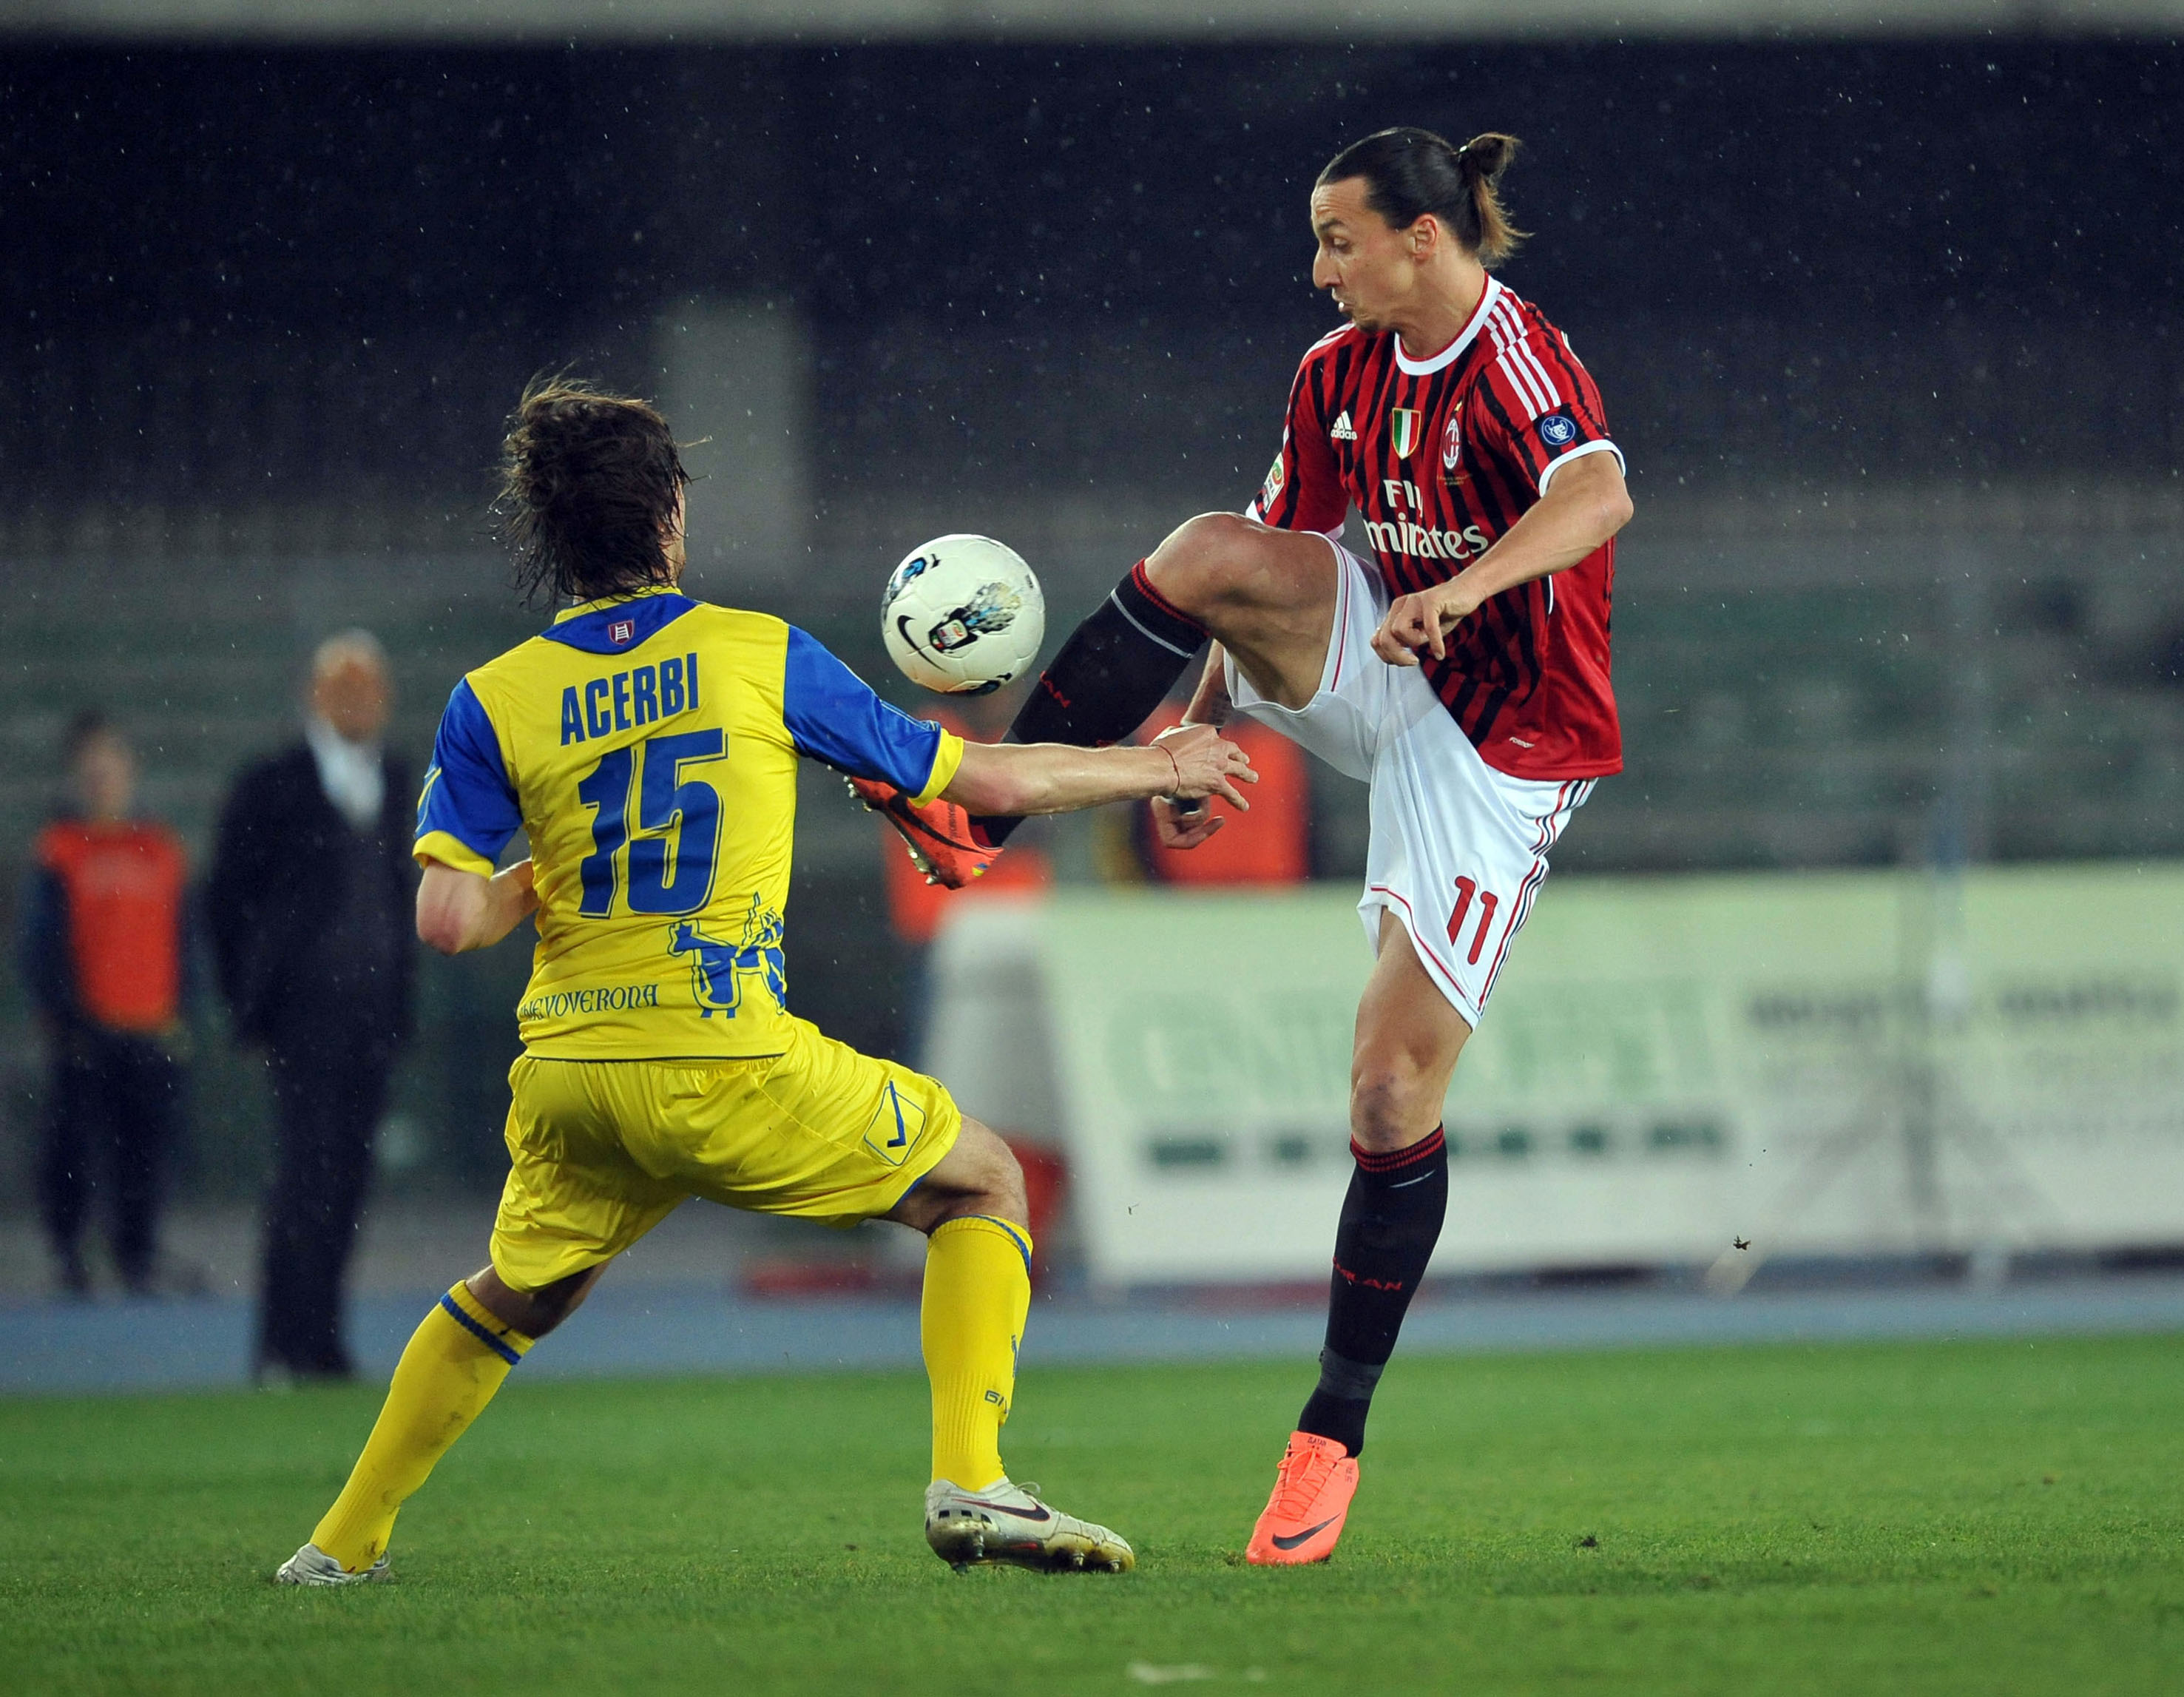 "Ibra" i kamp med en Chievo-försvarare.